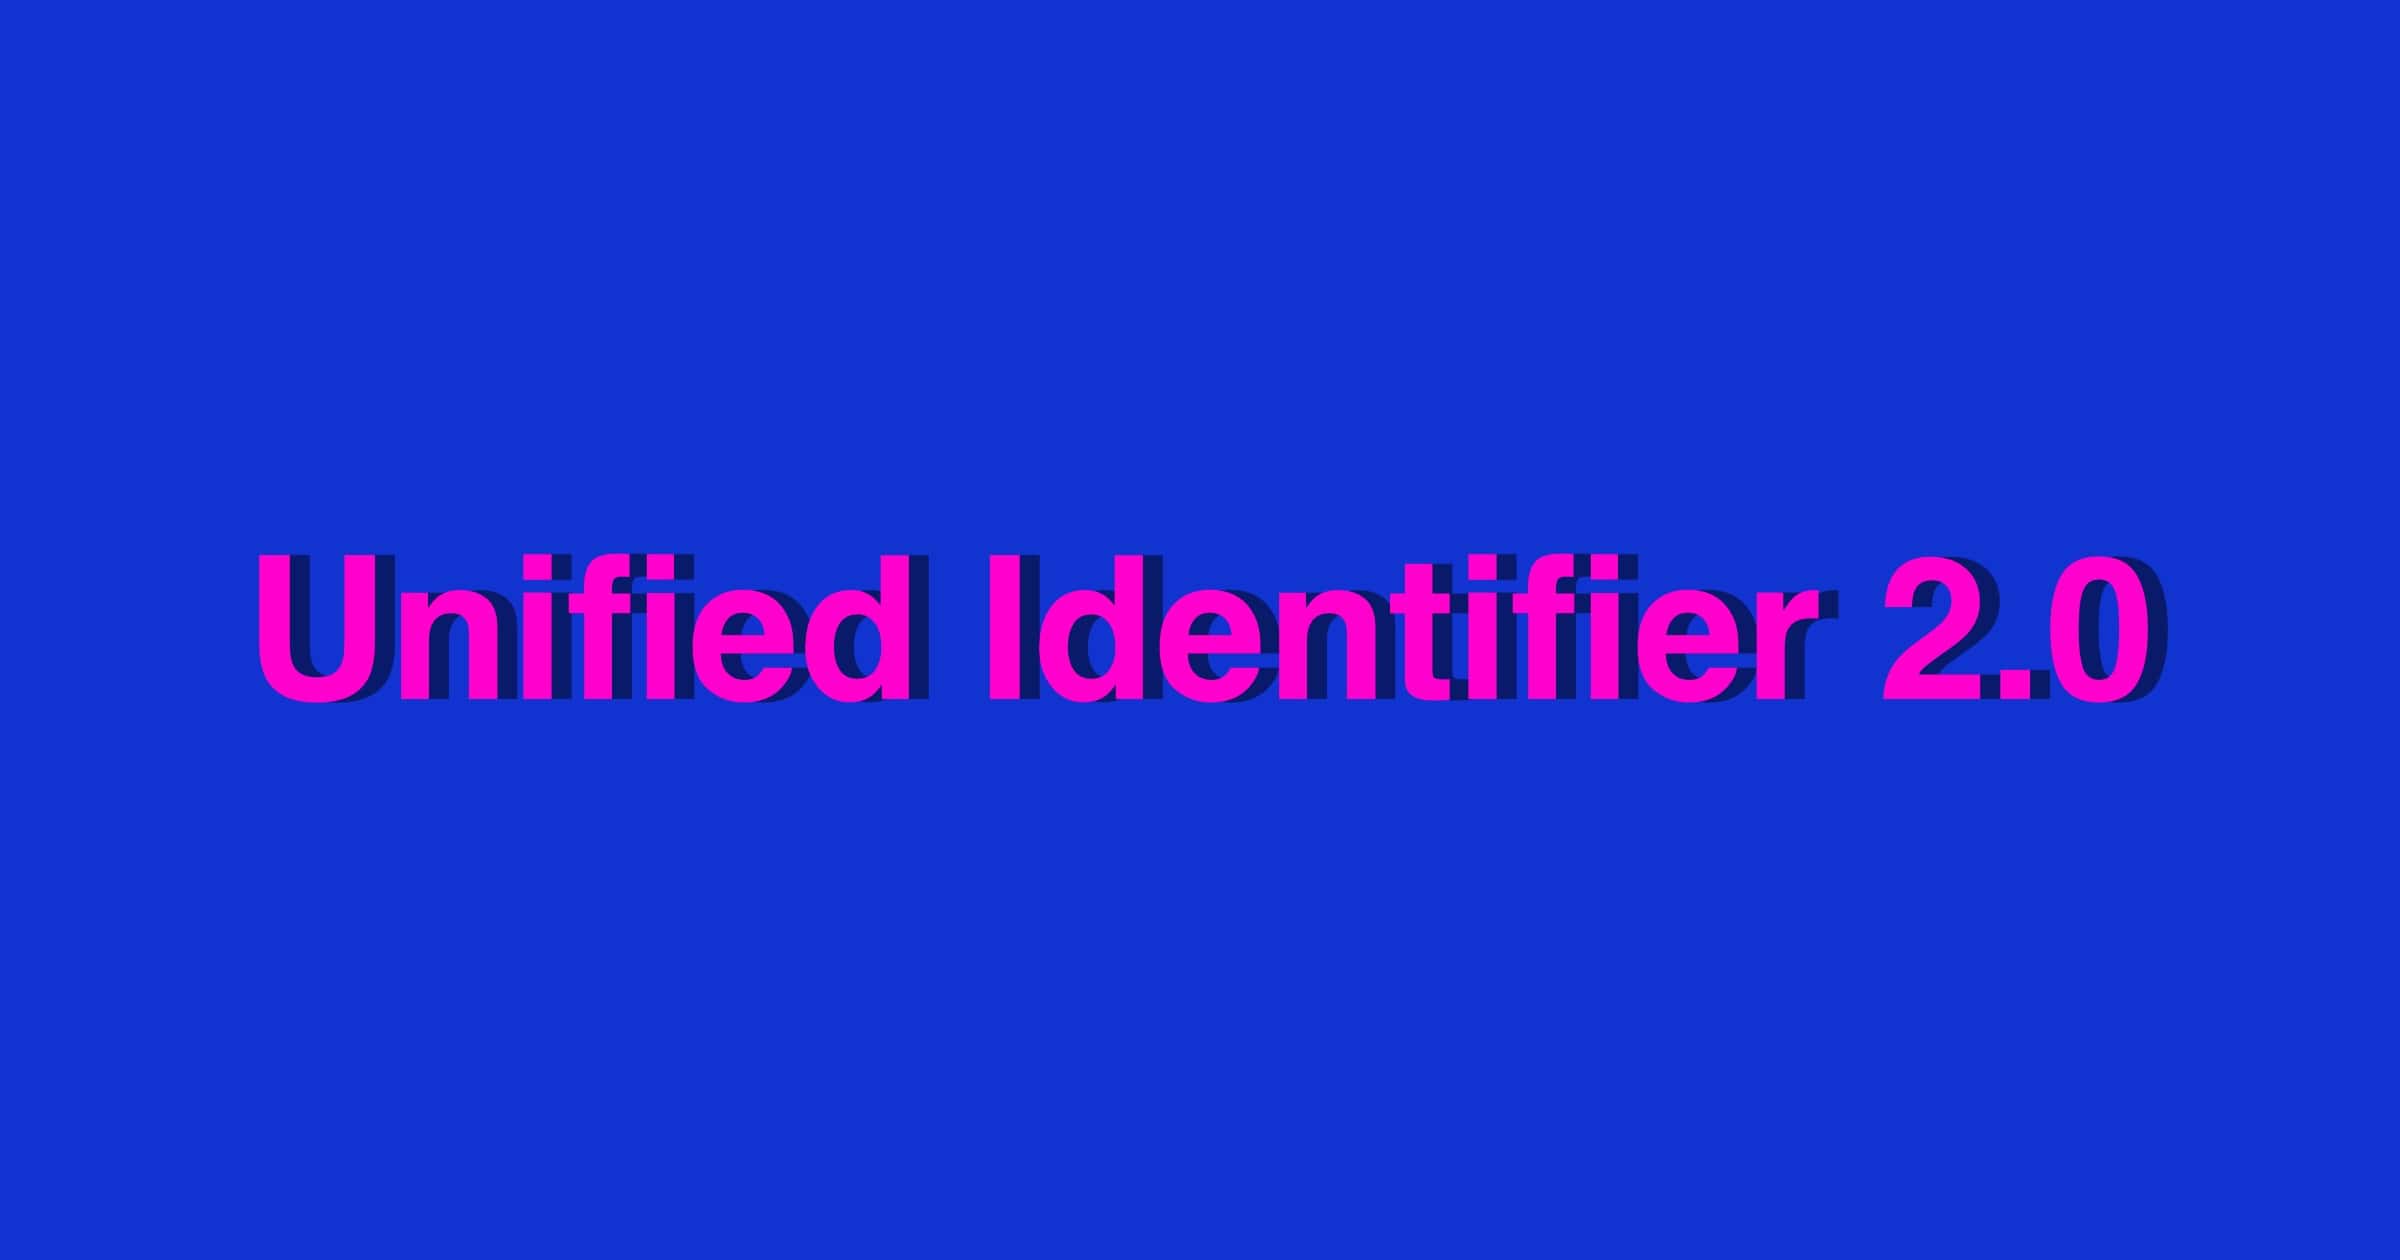 Unified identifier 2.0